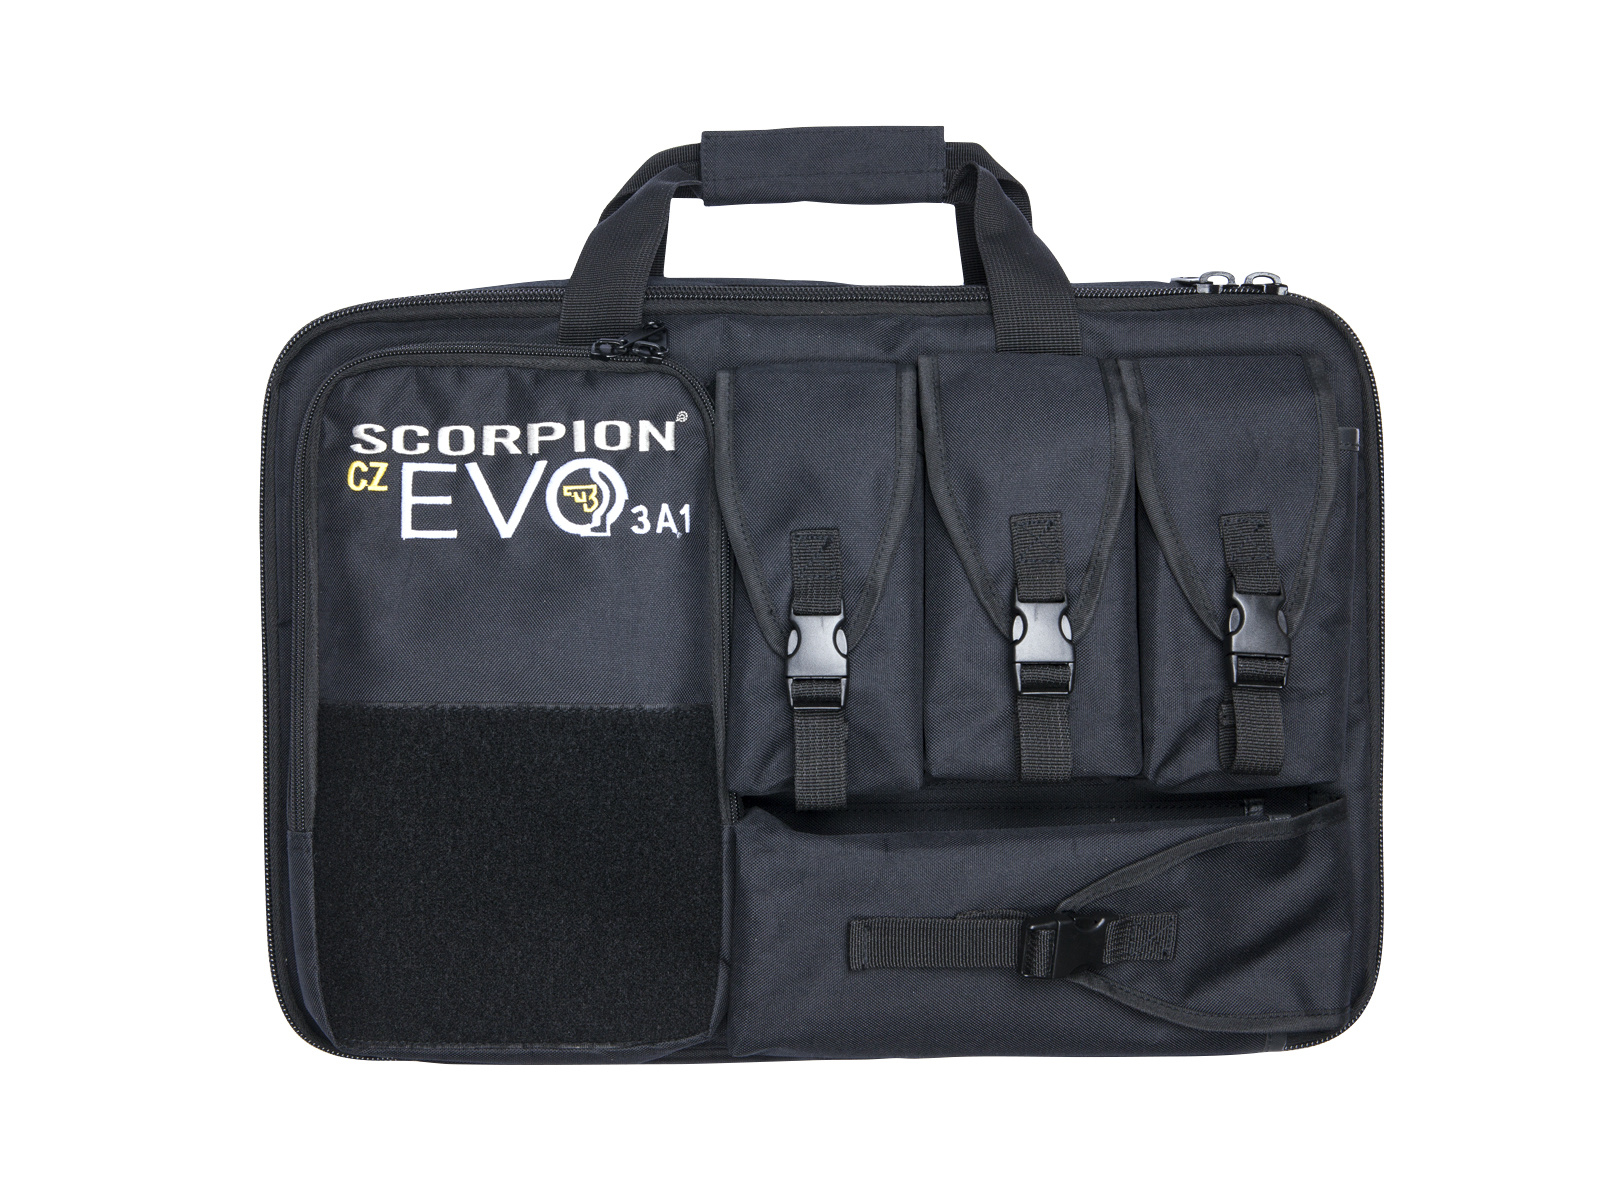 ASG Gewehrtasche Scorpion Bag EVO 3 A1 - BK